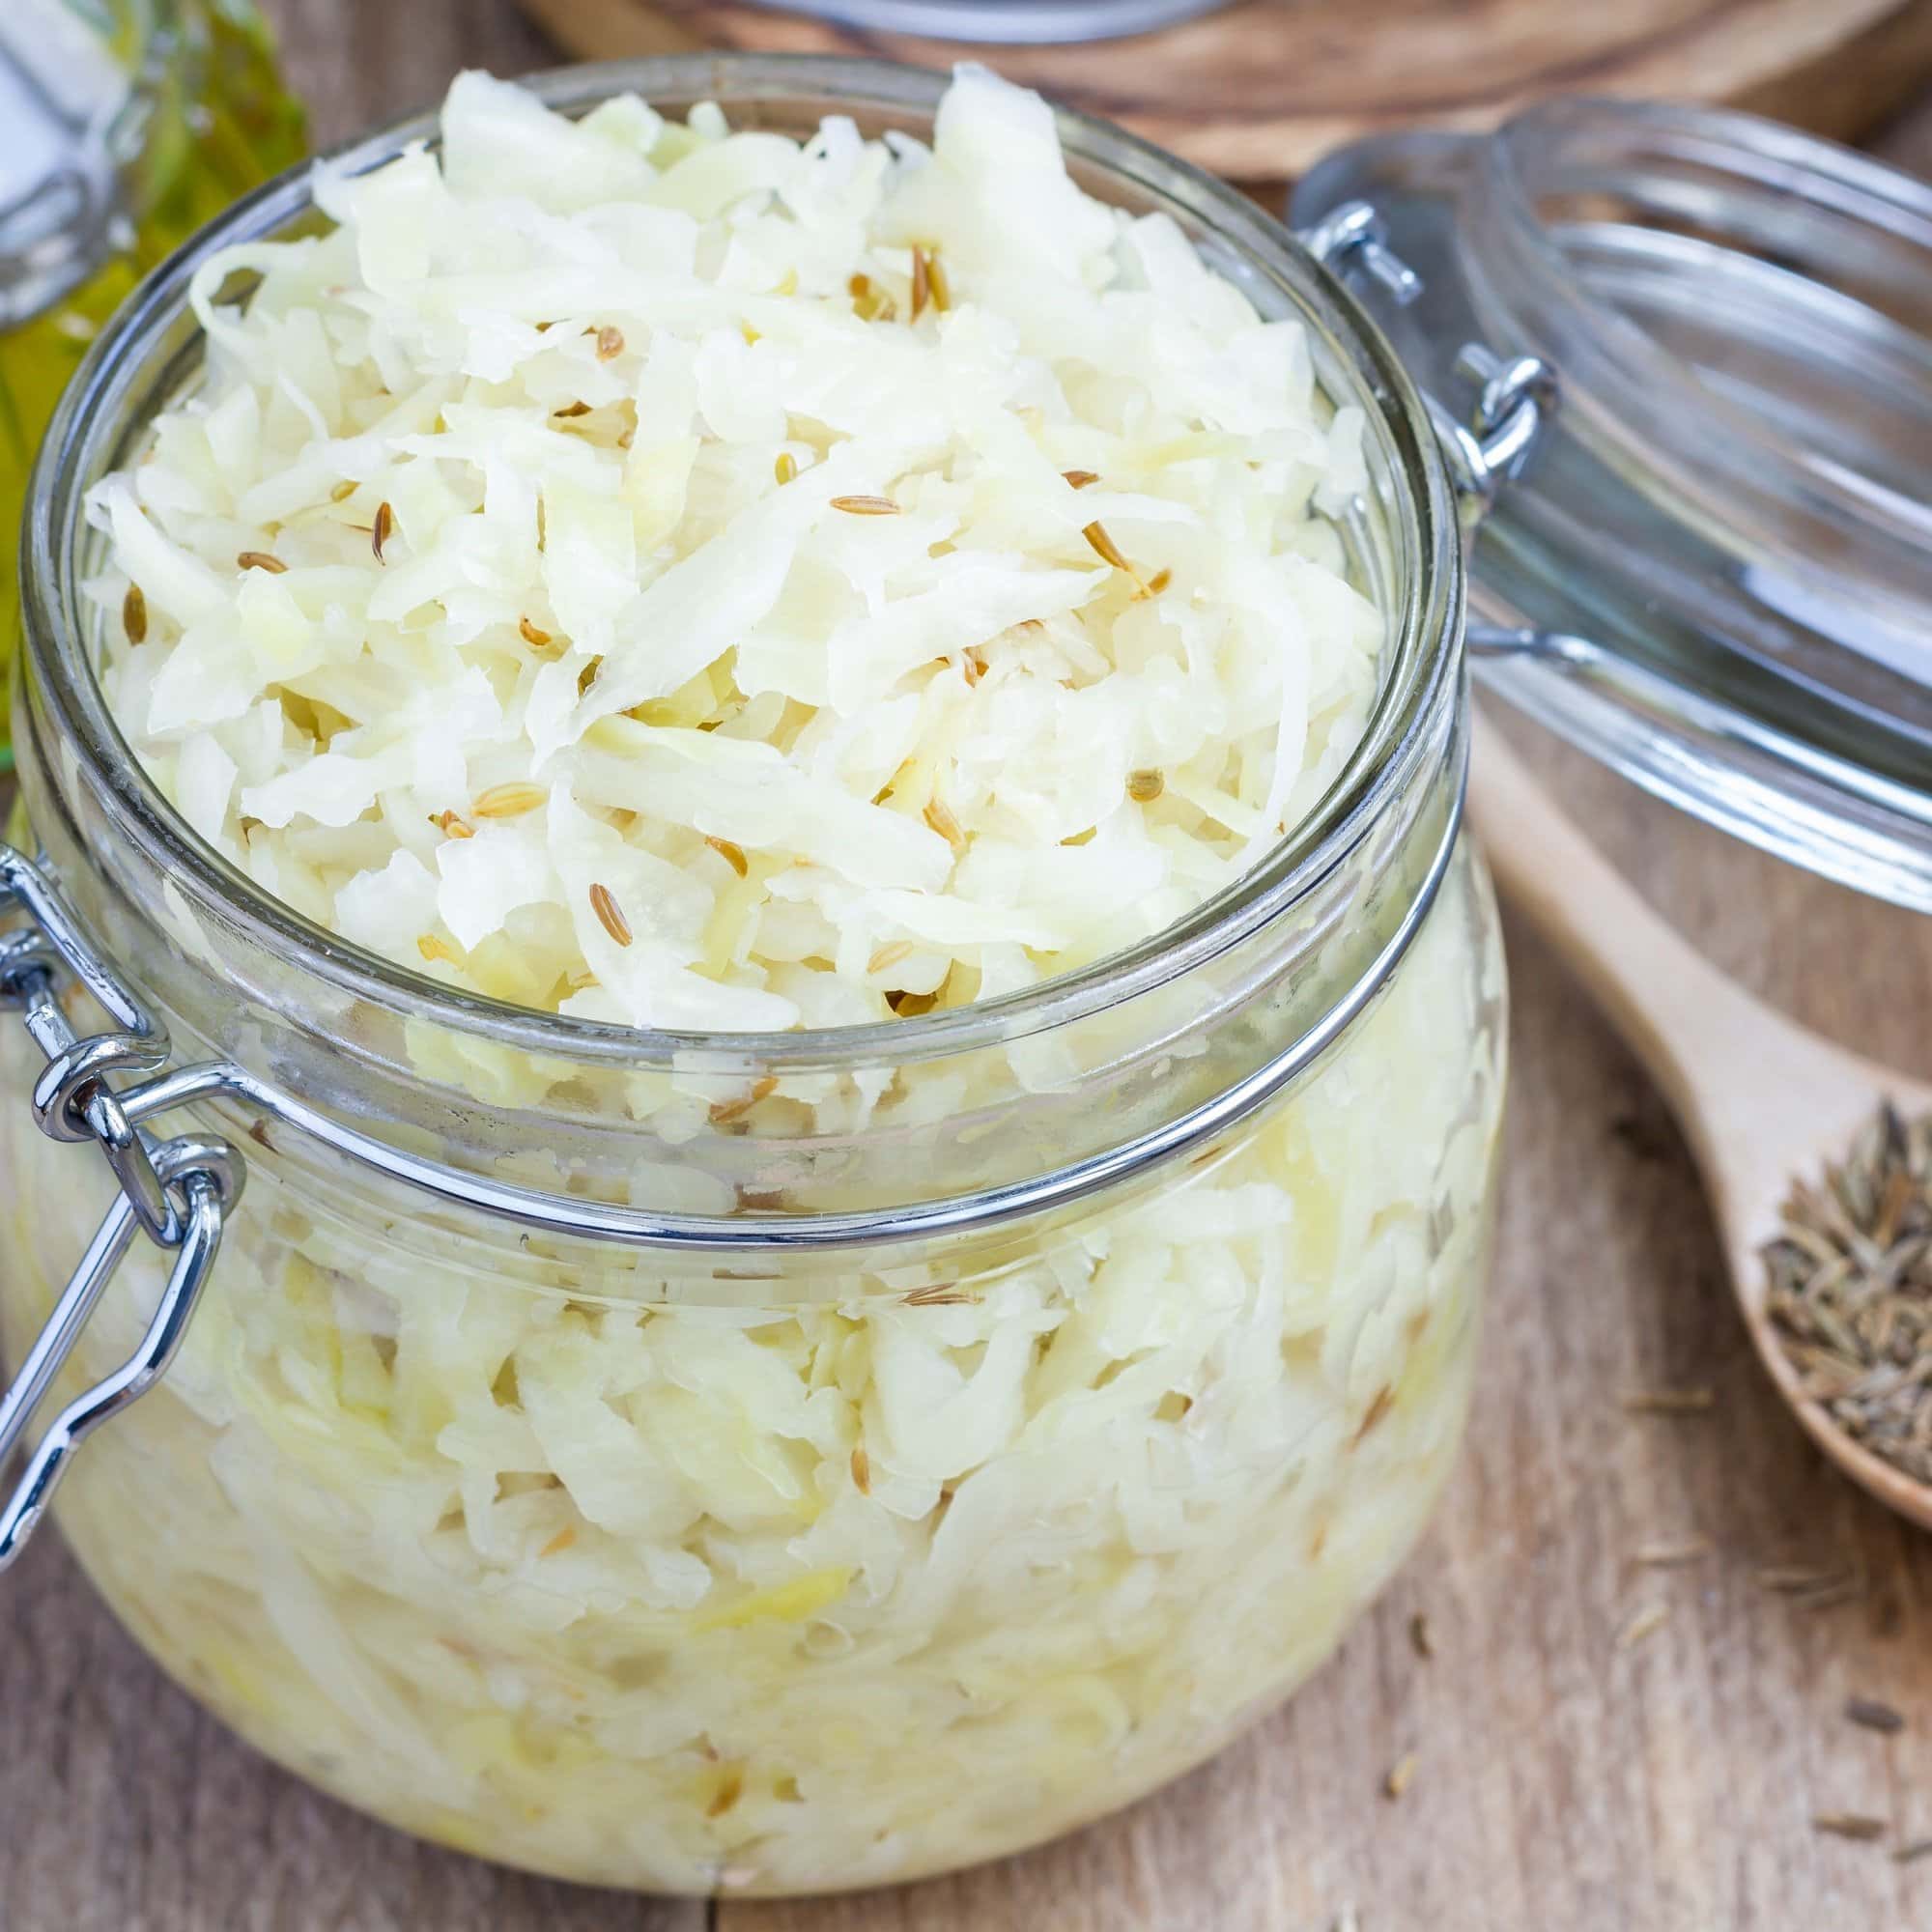 Homemade sauerkraut with cumin in a glass jar, closeup, square